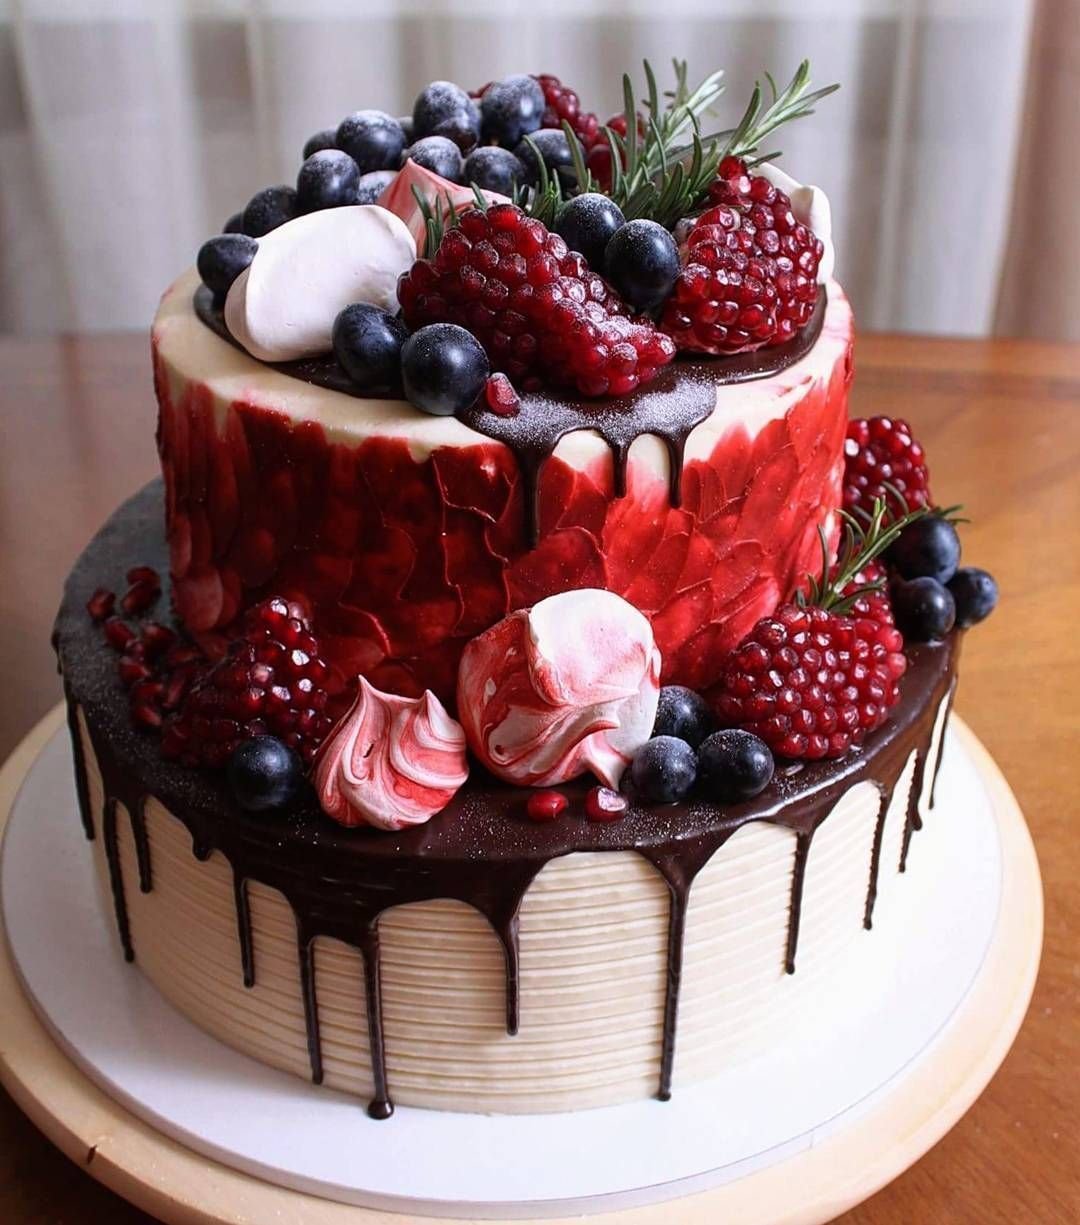 Над воротами занялась красивее торты. Красивые торты. Красивые торты на день рождения. Очень красивые торты. Торт с ягодами.